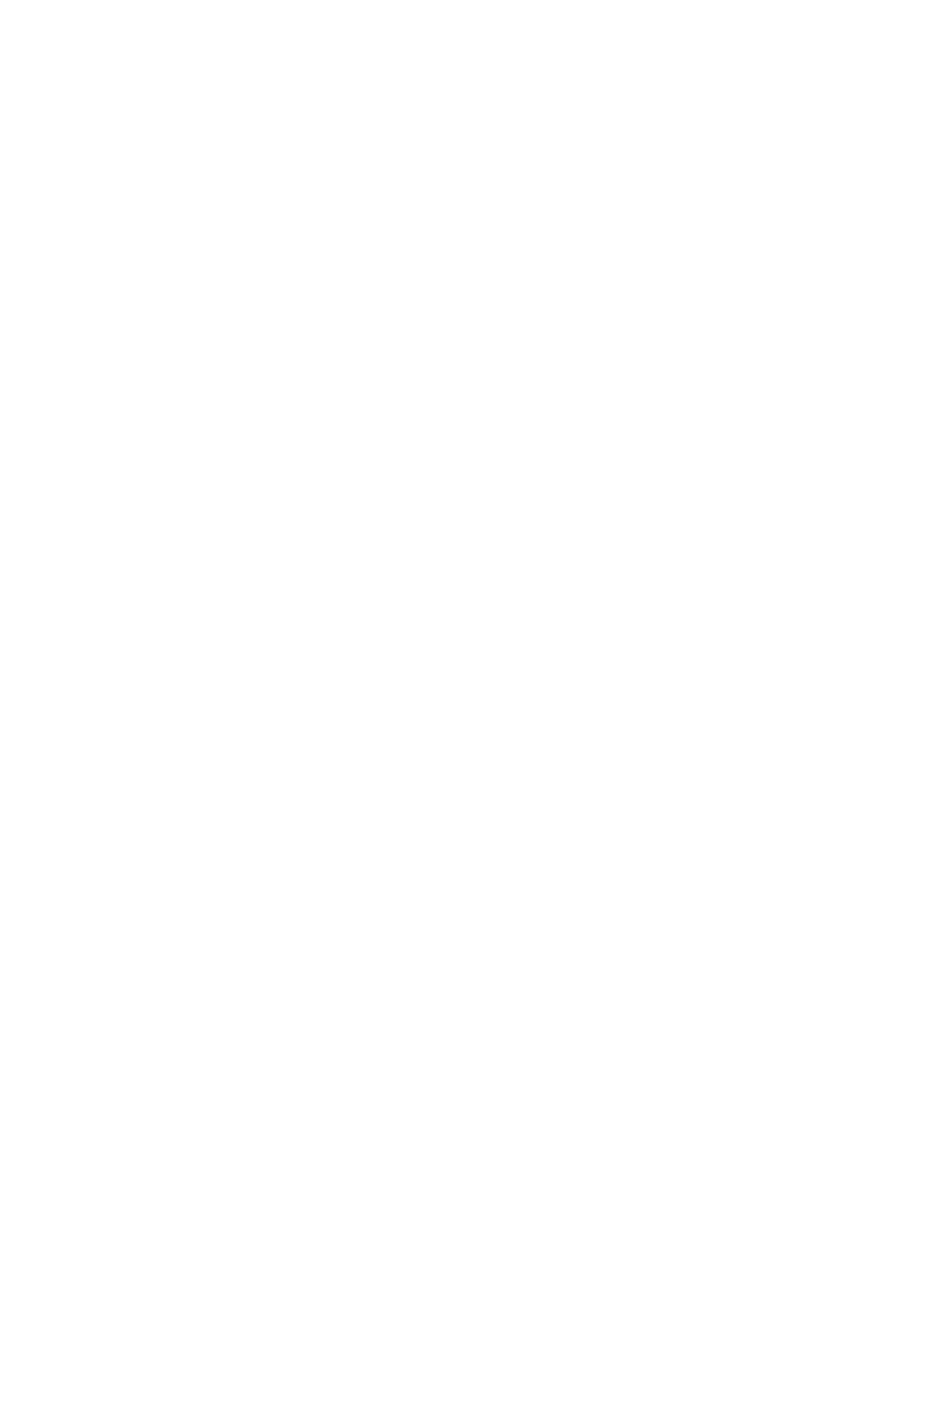 Марат Дильман, Untitled, 2017, аюкобондтағы латексті мөр, 40 x 90 см, 15 x 35 инч, 5-тен 1 + 1 AP